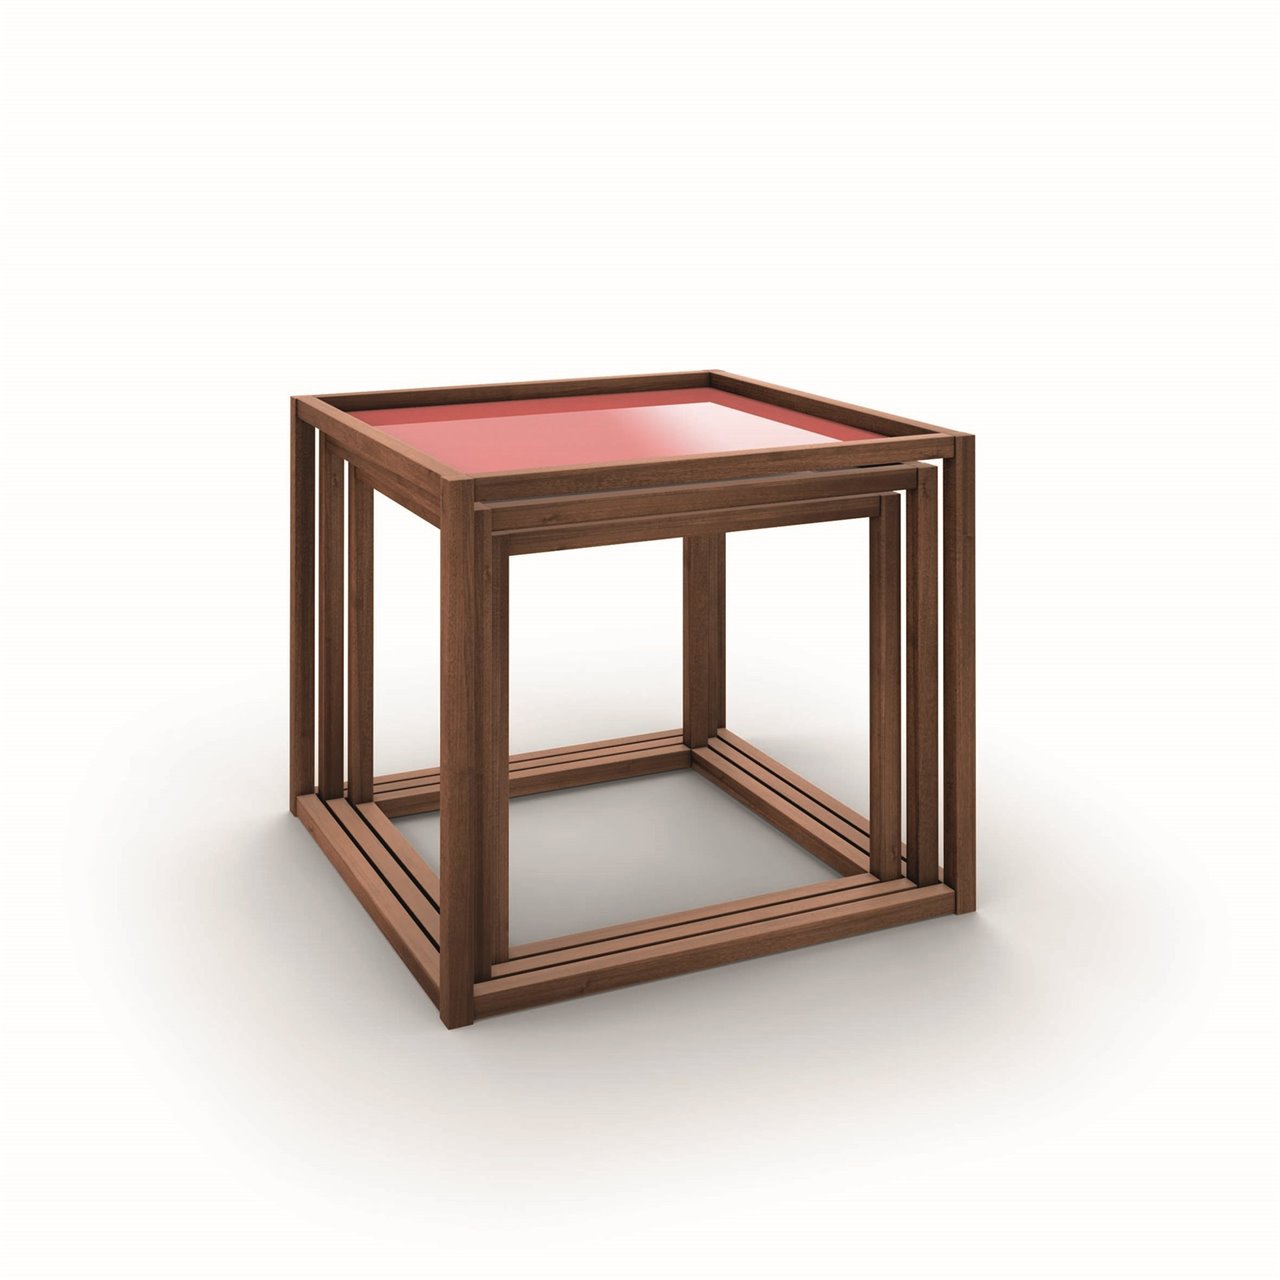 Nest of Tables son tres mesas en forma de cubo que permiten ser apiladas desde arriba, ocupando poco espacio y garantizando una mayor estabilidad.